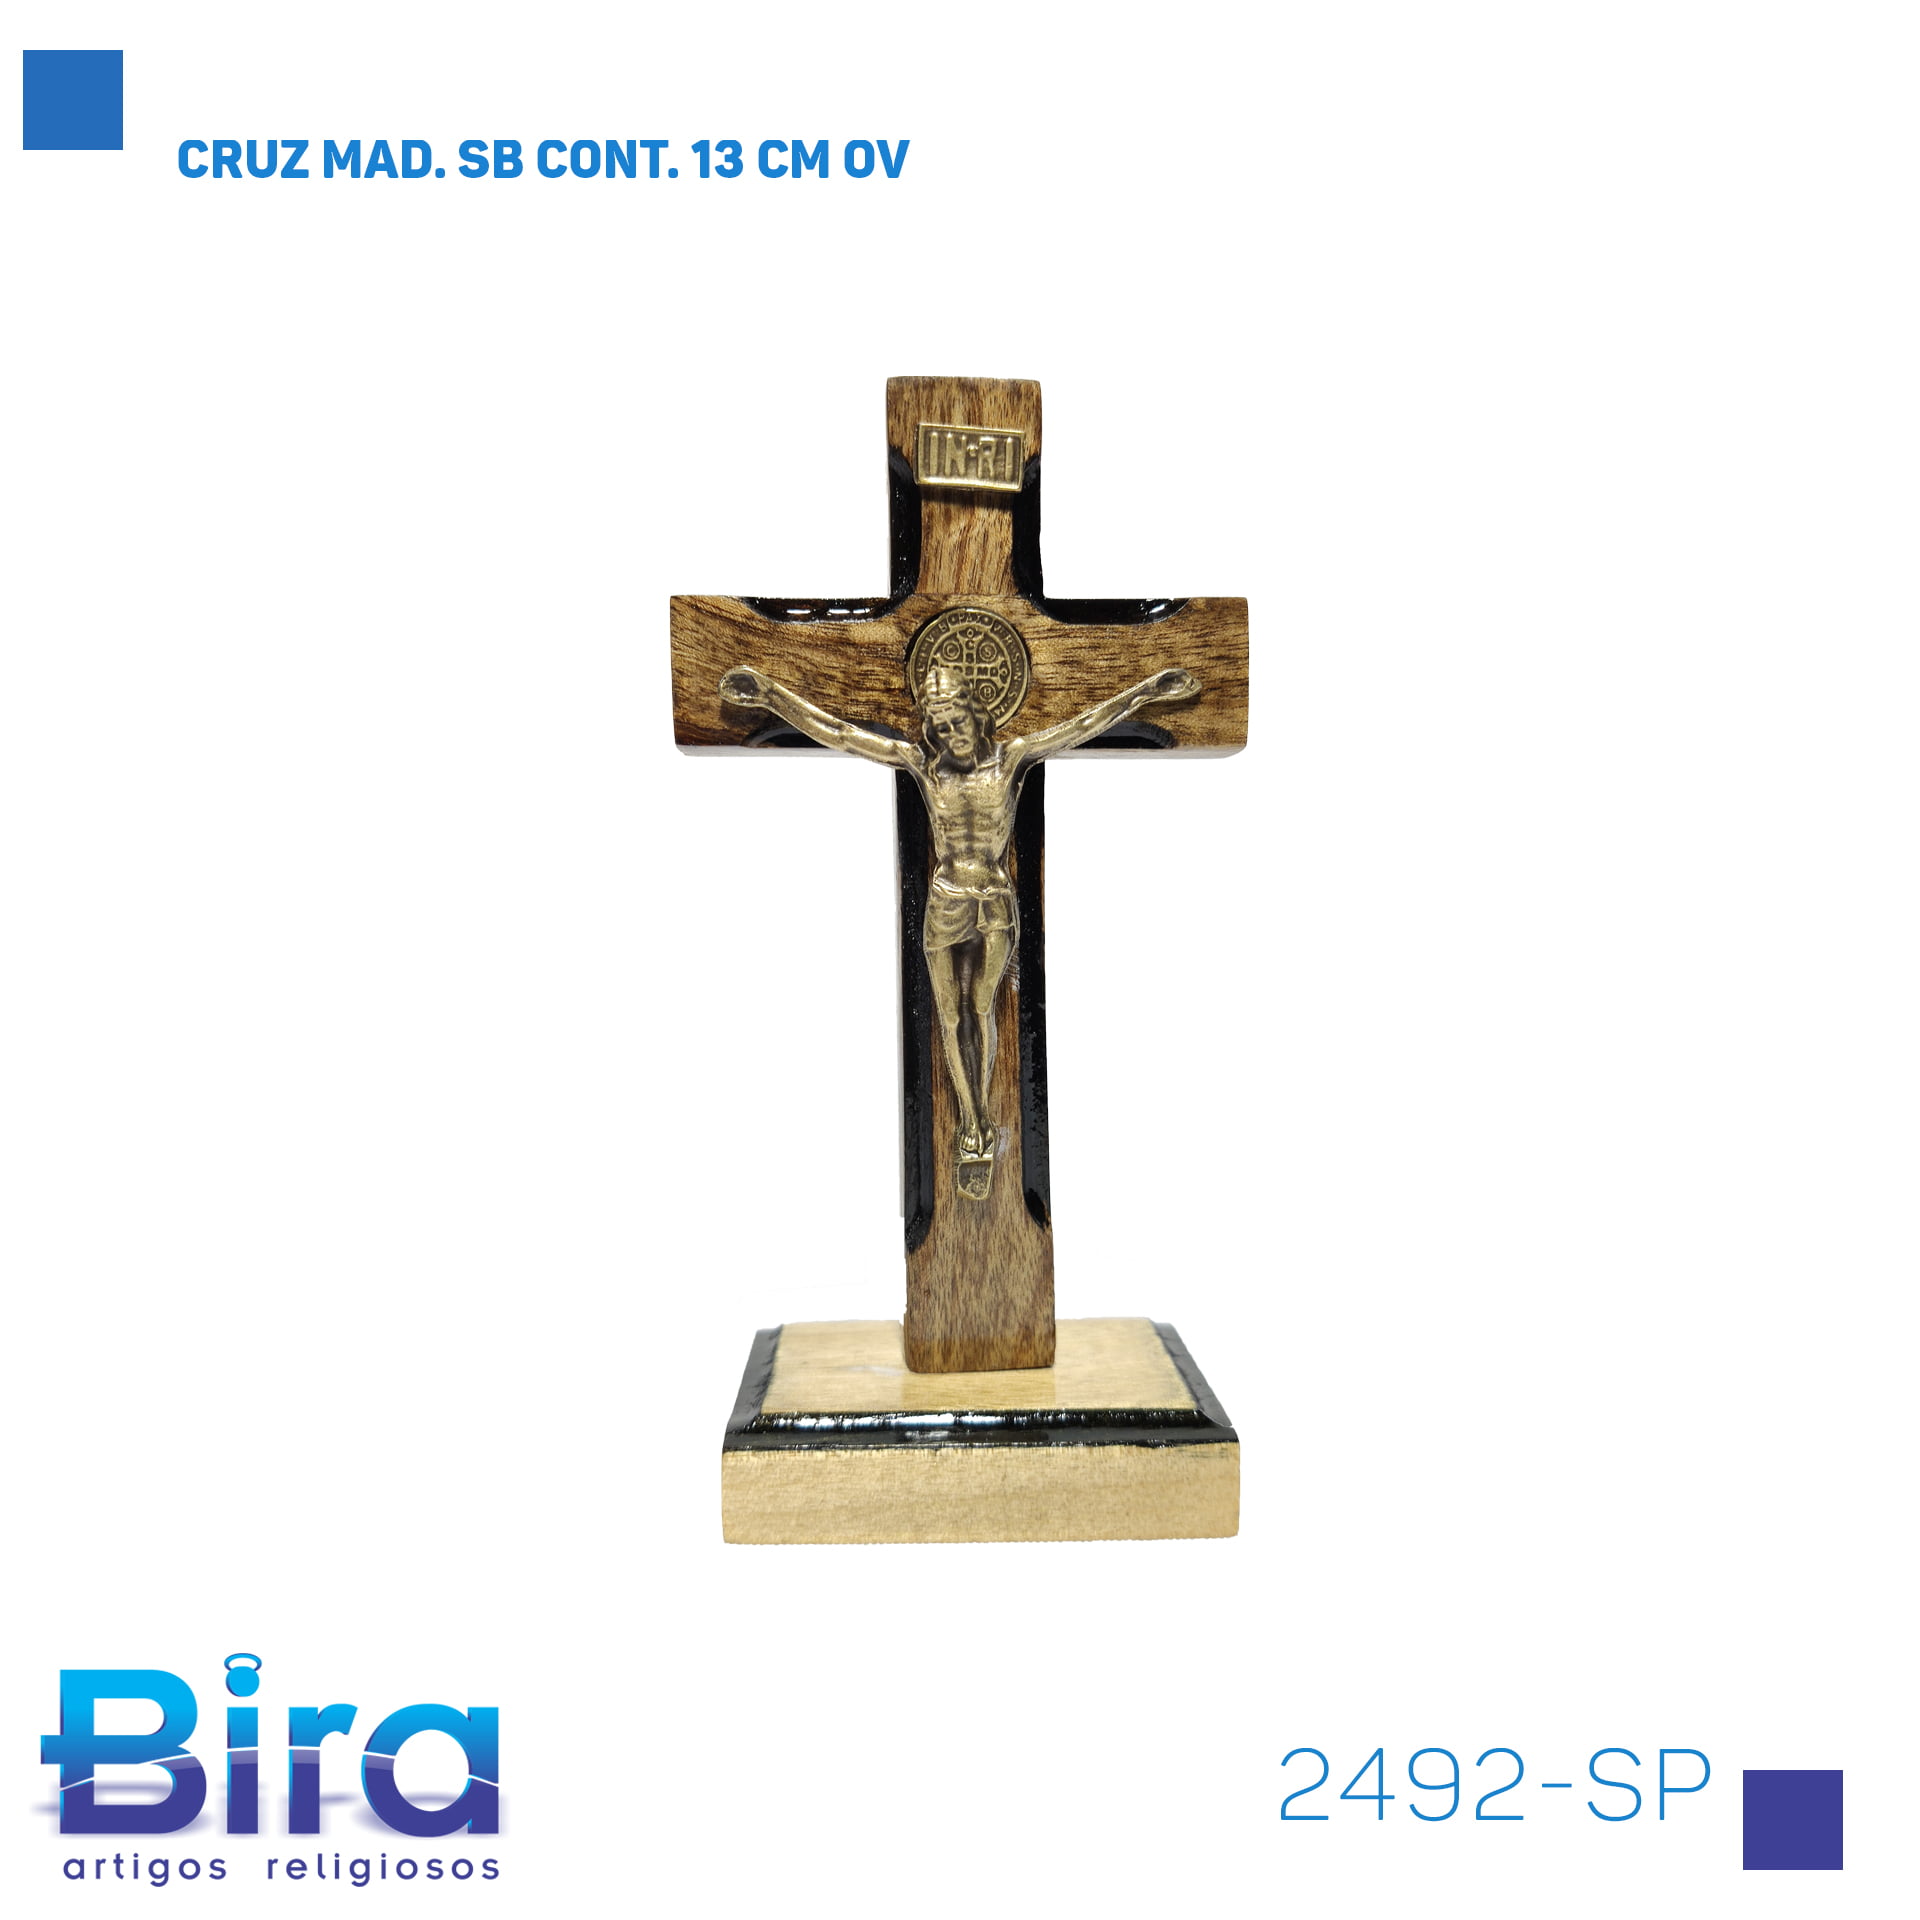 Bira Artigos Religiosos - CRUZ MAD. SB CONT. 13 CM OV - Cód . 2492-SP